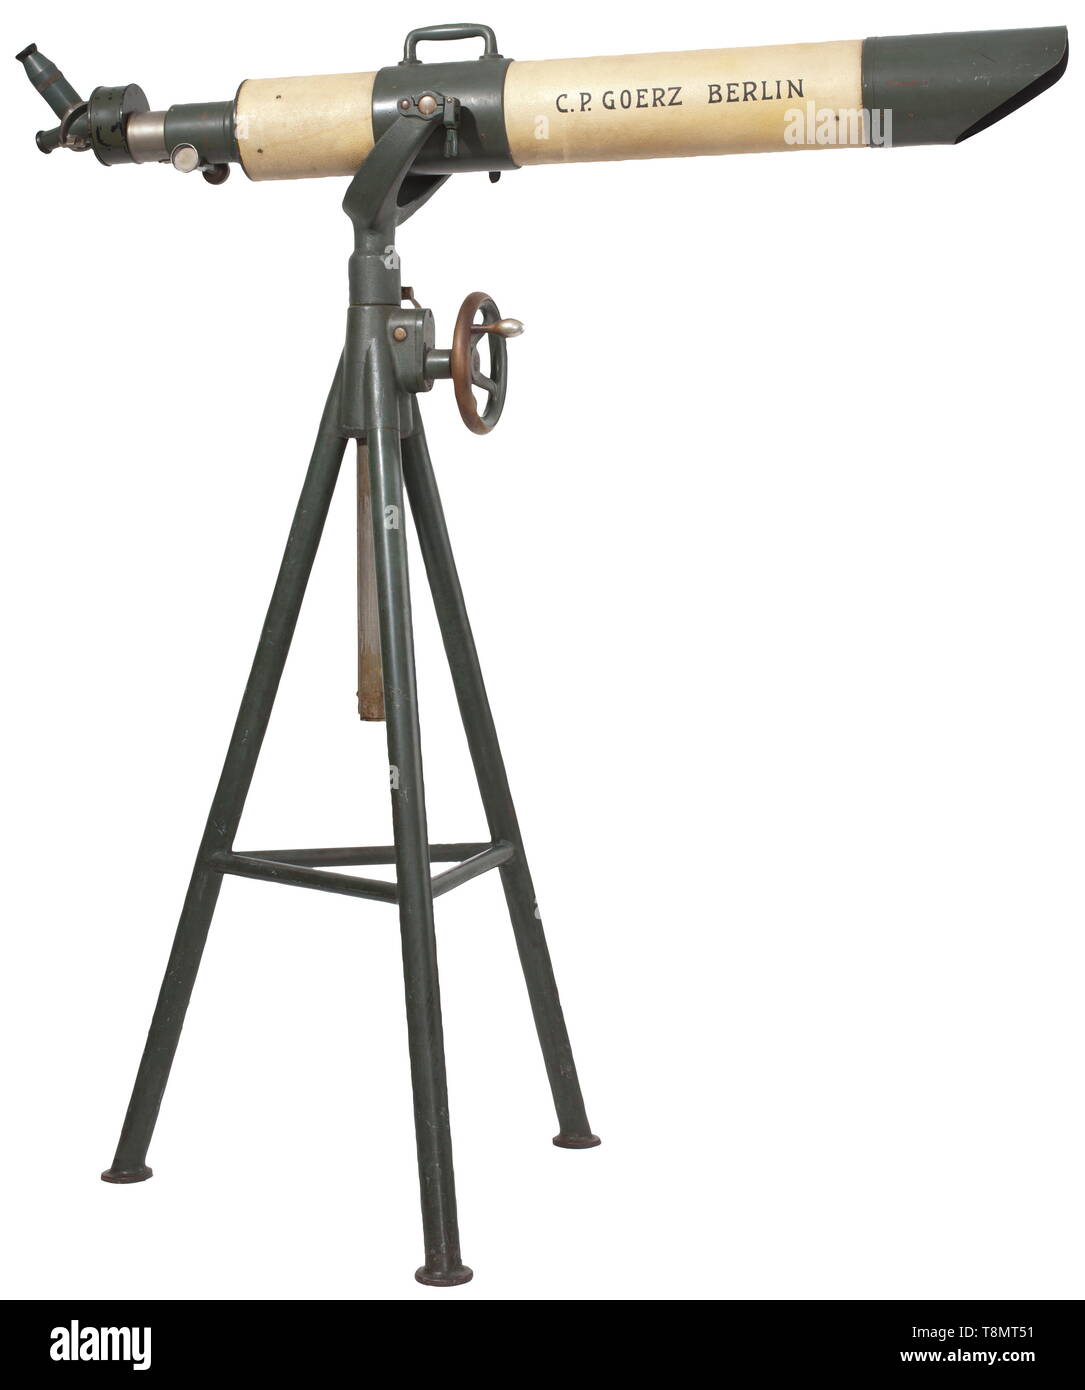 Ein refraktor C. S. Goerz 110/1270 mit Stativ und original Koffer, um 1910  Edelstahl Teleskop, glatte Feld-grau und leicht rauen Lack, Bezeichnung des  ursprünglichen Herstellers im Jugendstil Schriftzug auf der Seite "C. S.